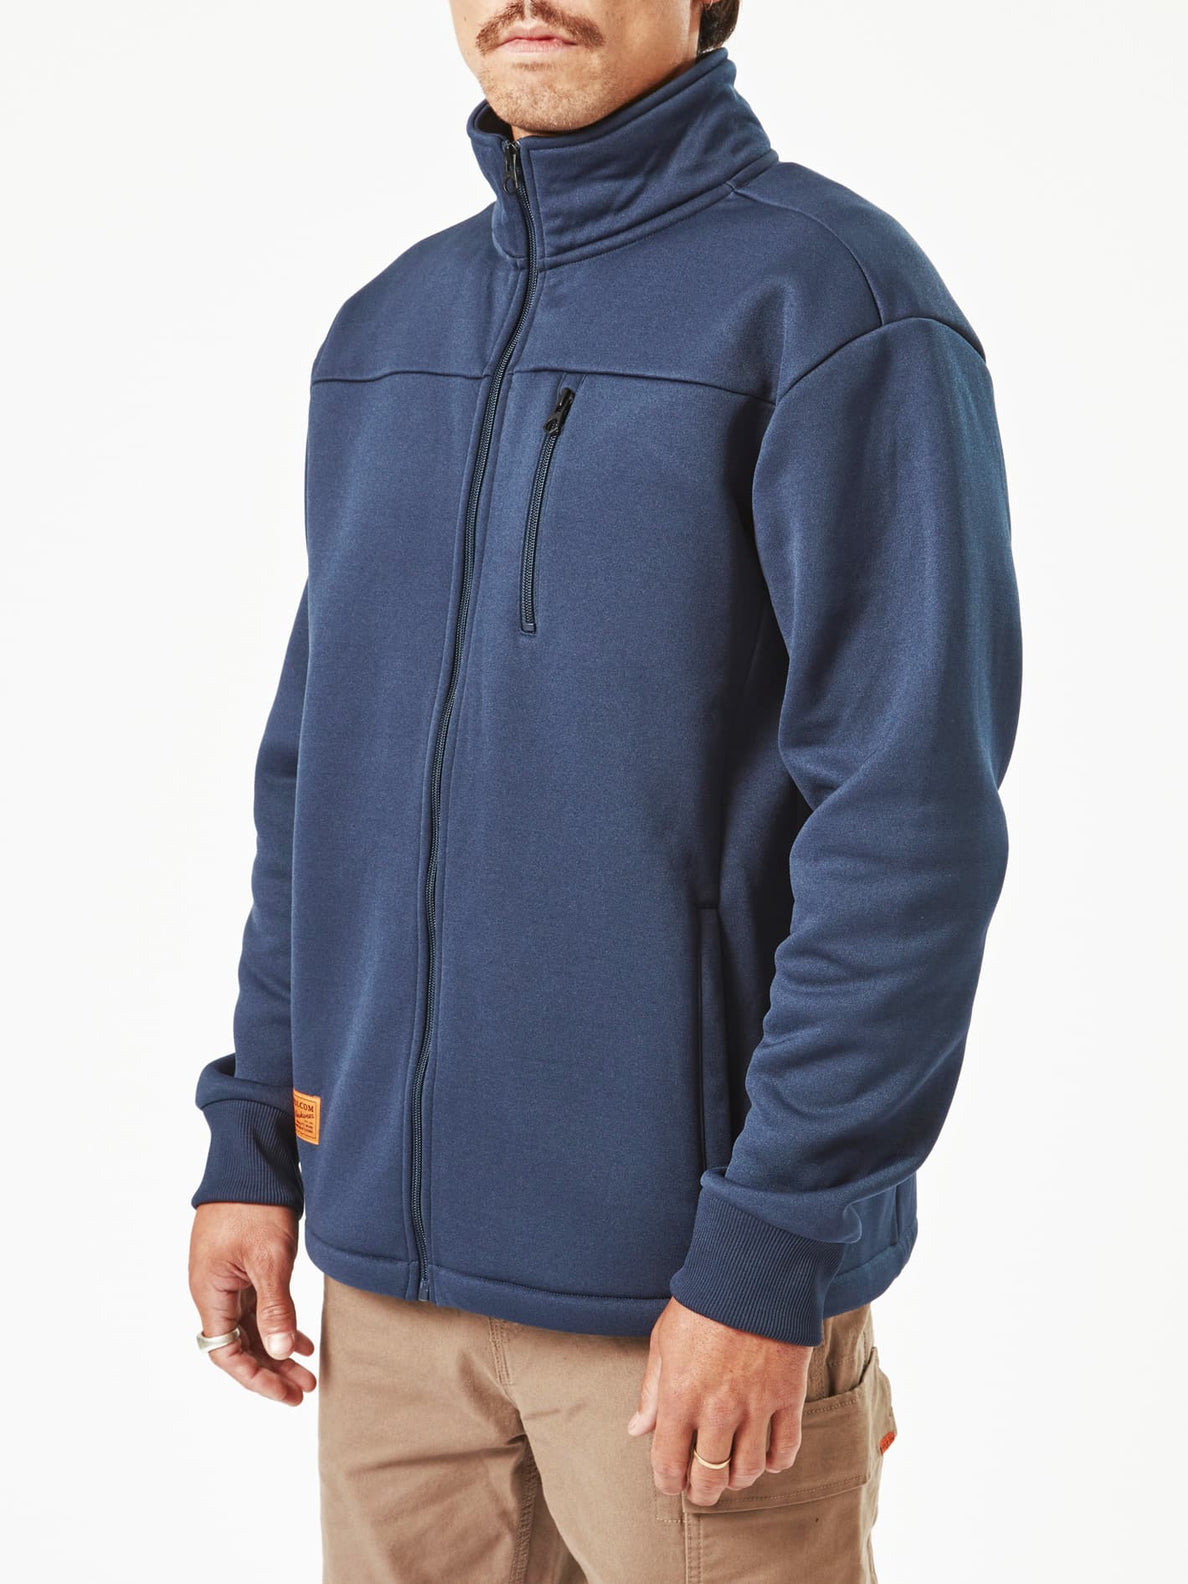 Volcom Workwear Bonded Zip Fleece - Navy